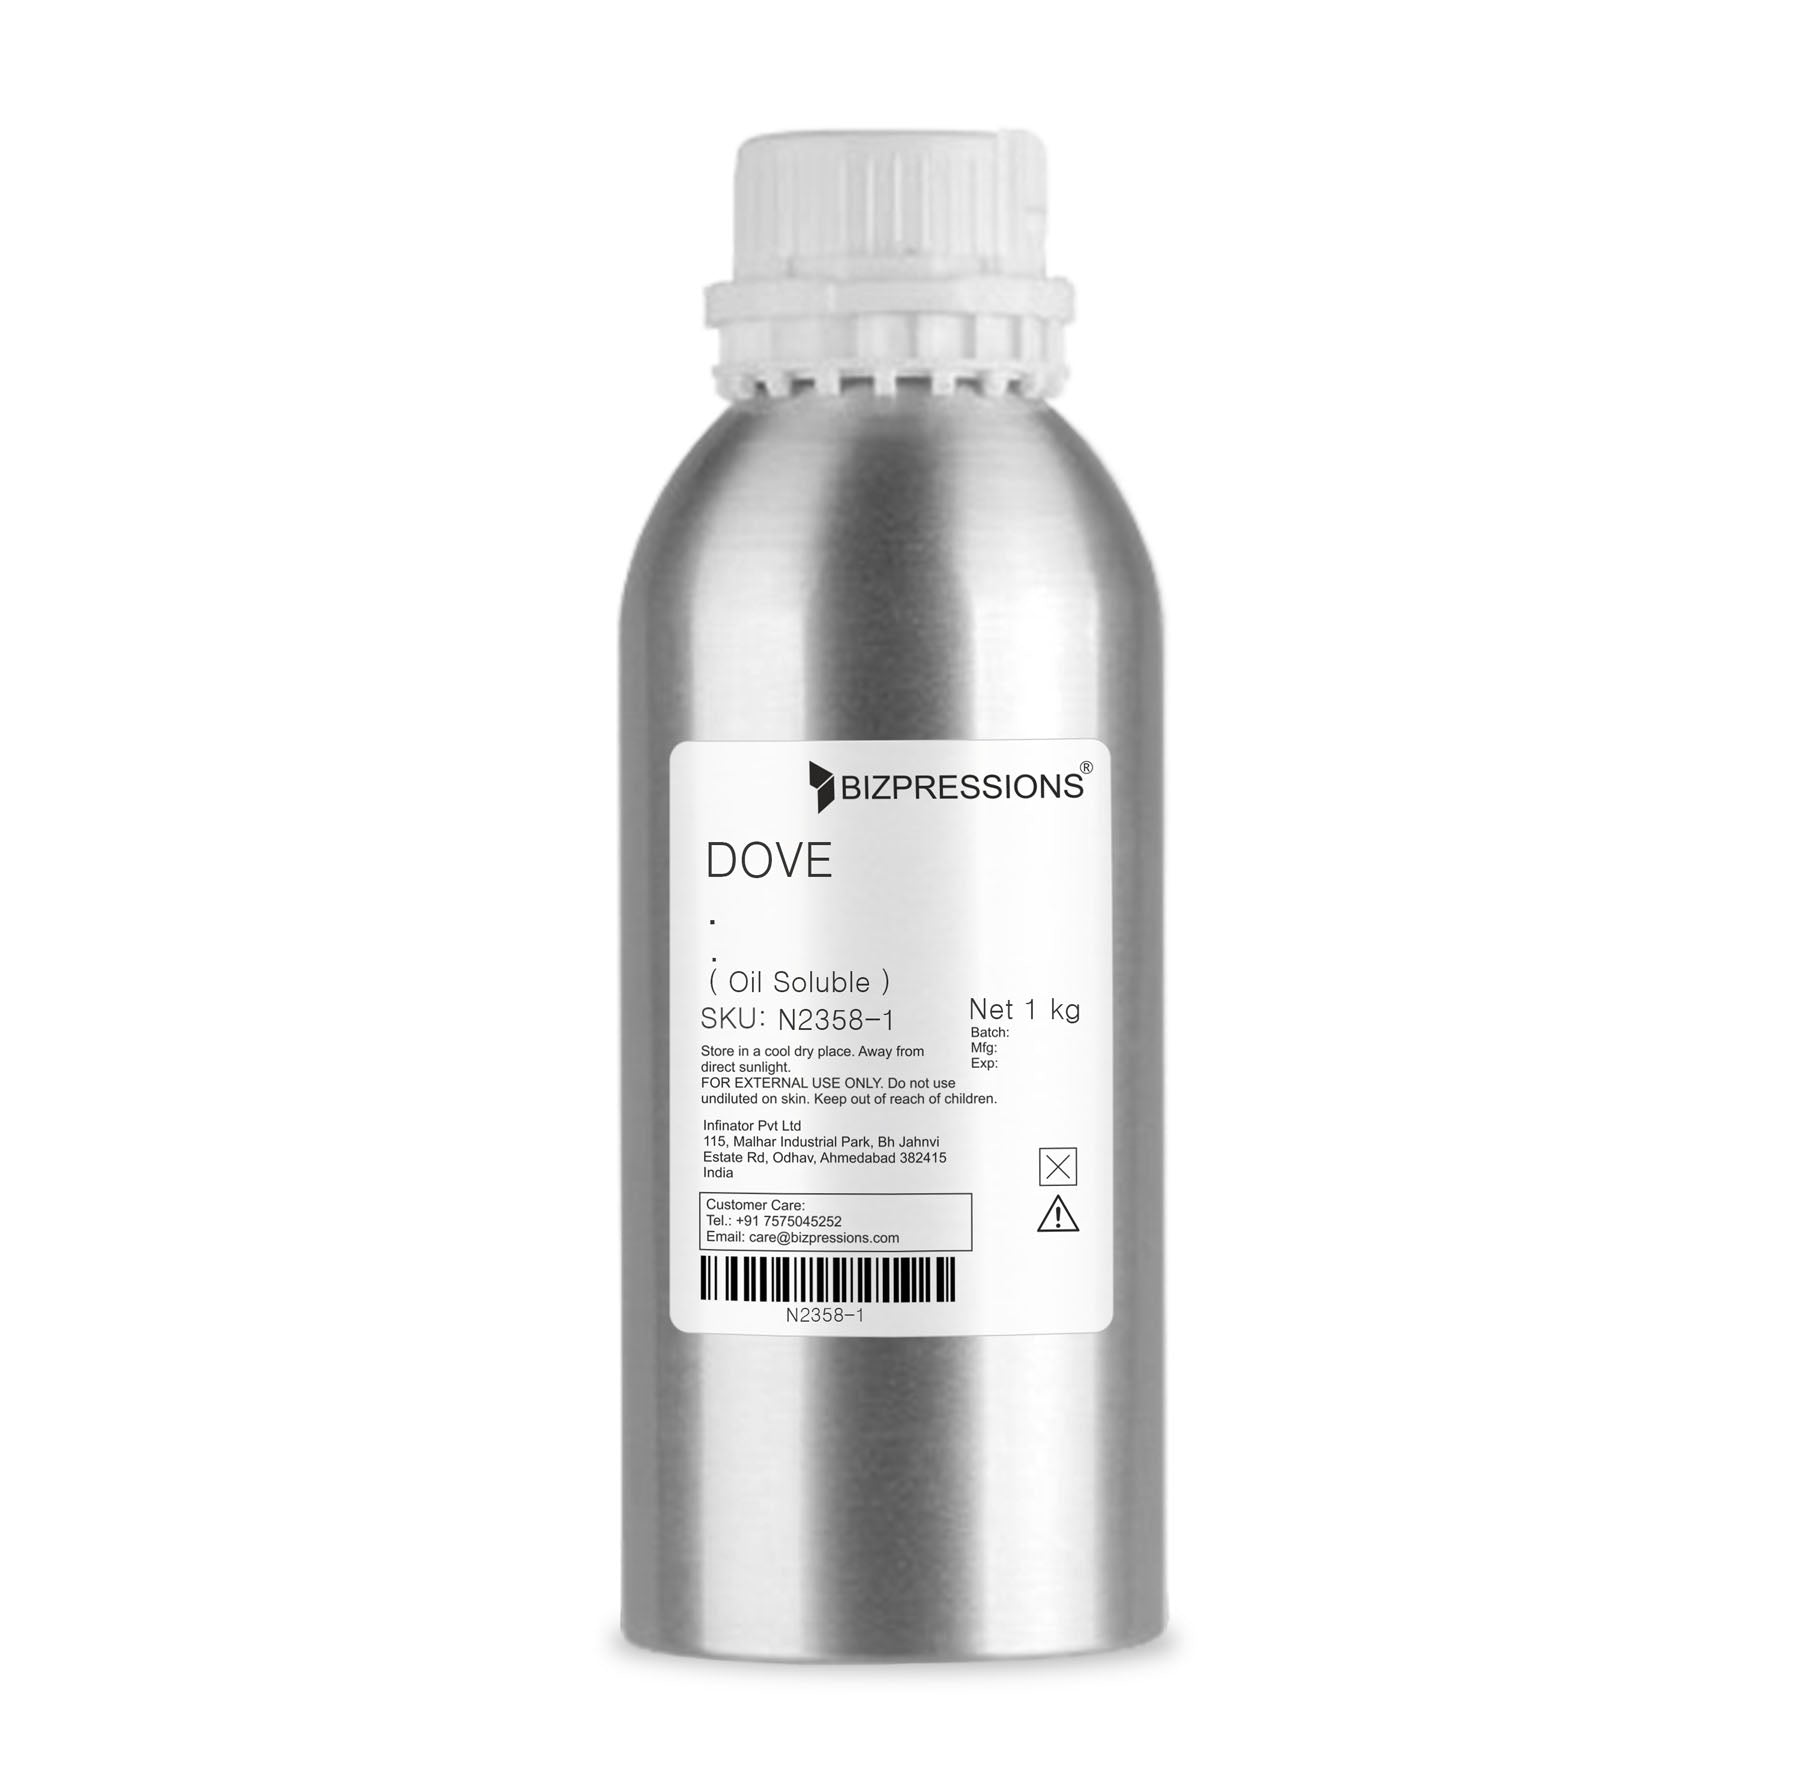 DOVE - Fragrance ( Oil Soluble ) - 1 kg